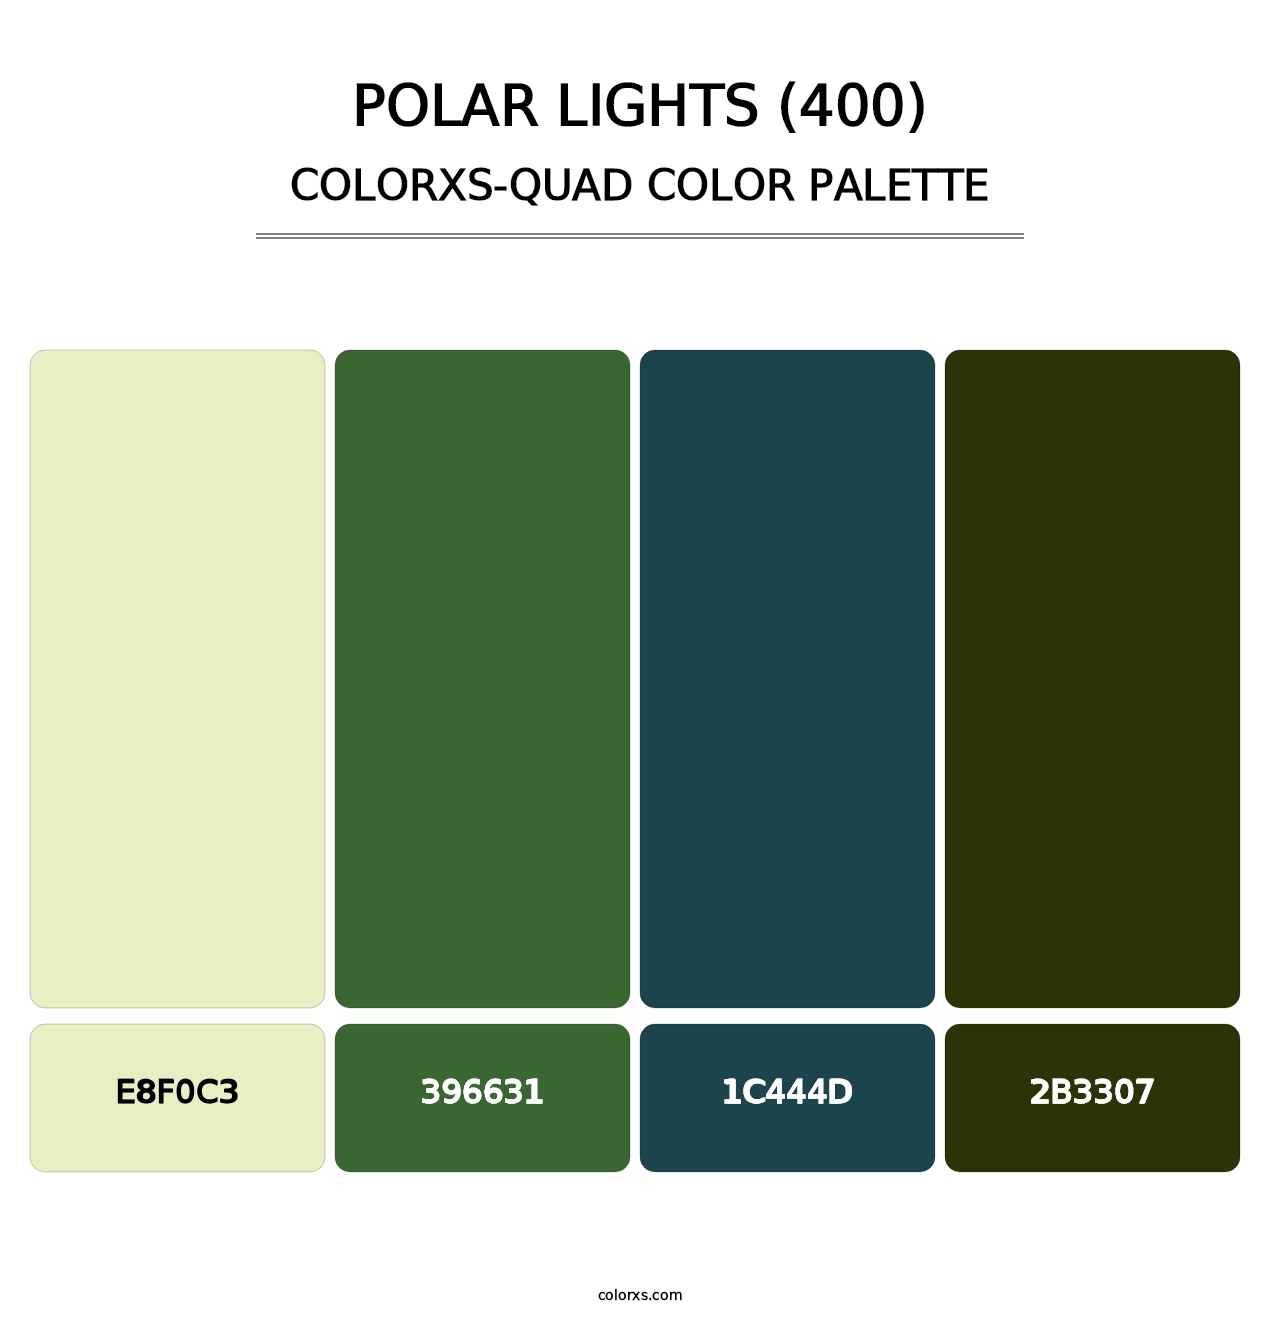 Polar Lights (400) - Colorxs Quad Palette